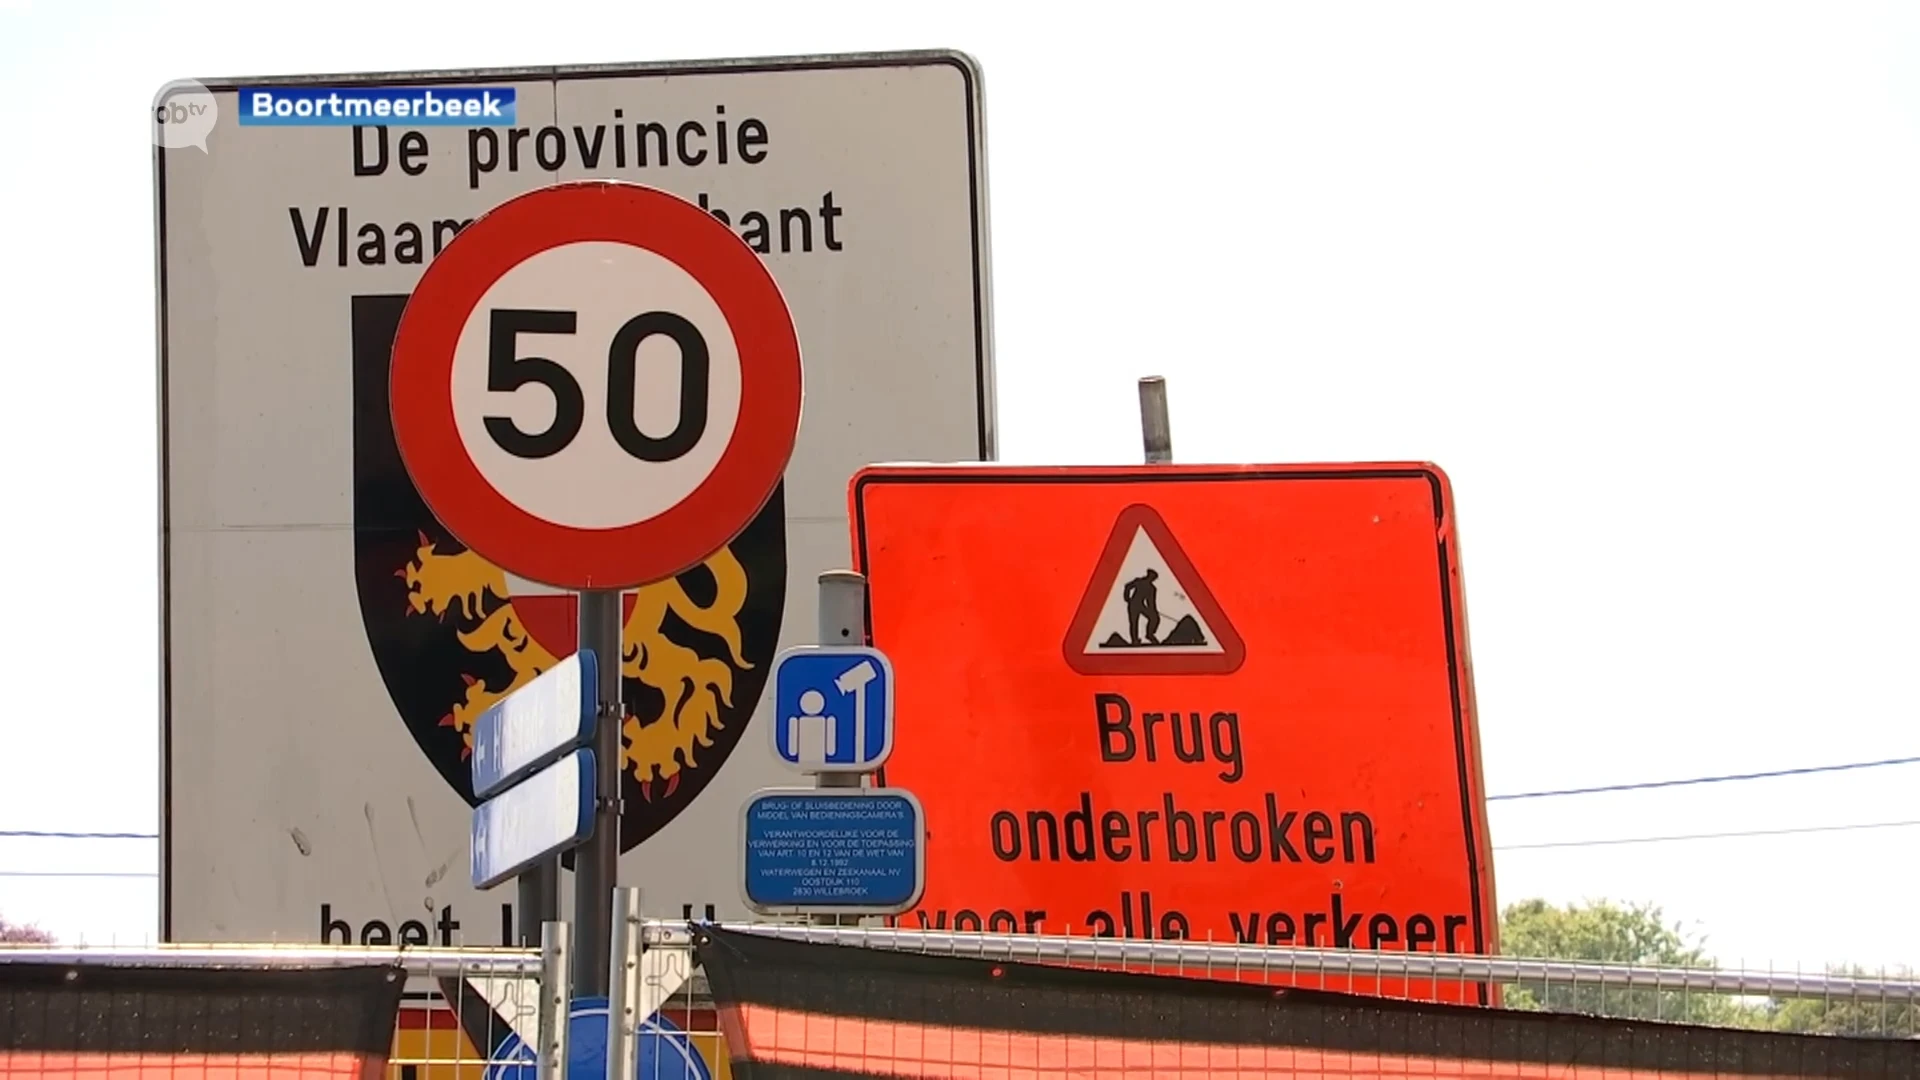 Politie van Boortmeerbeek beboet bijna 40 vrachtwagens in 3 dagen tijd